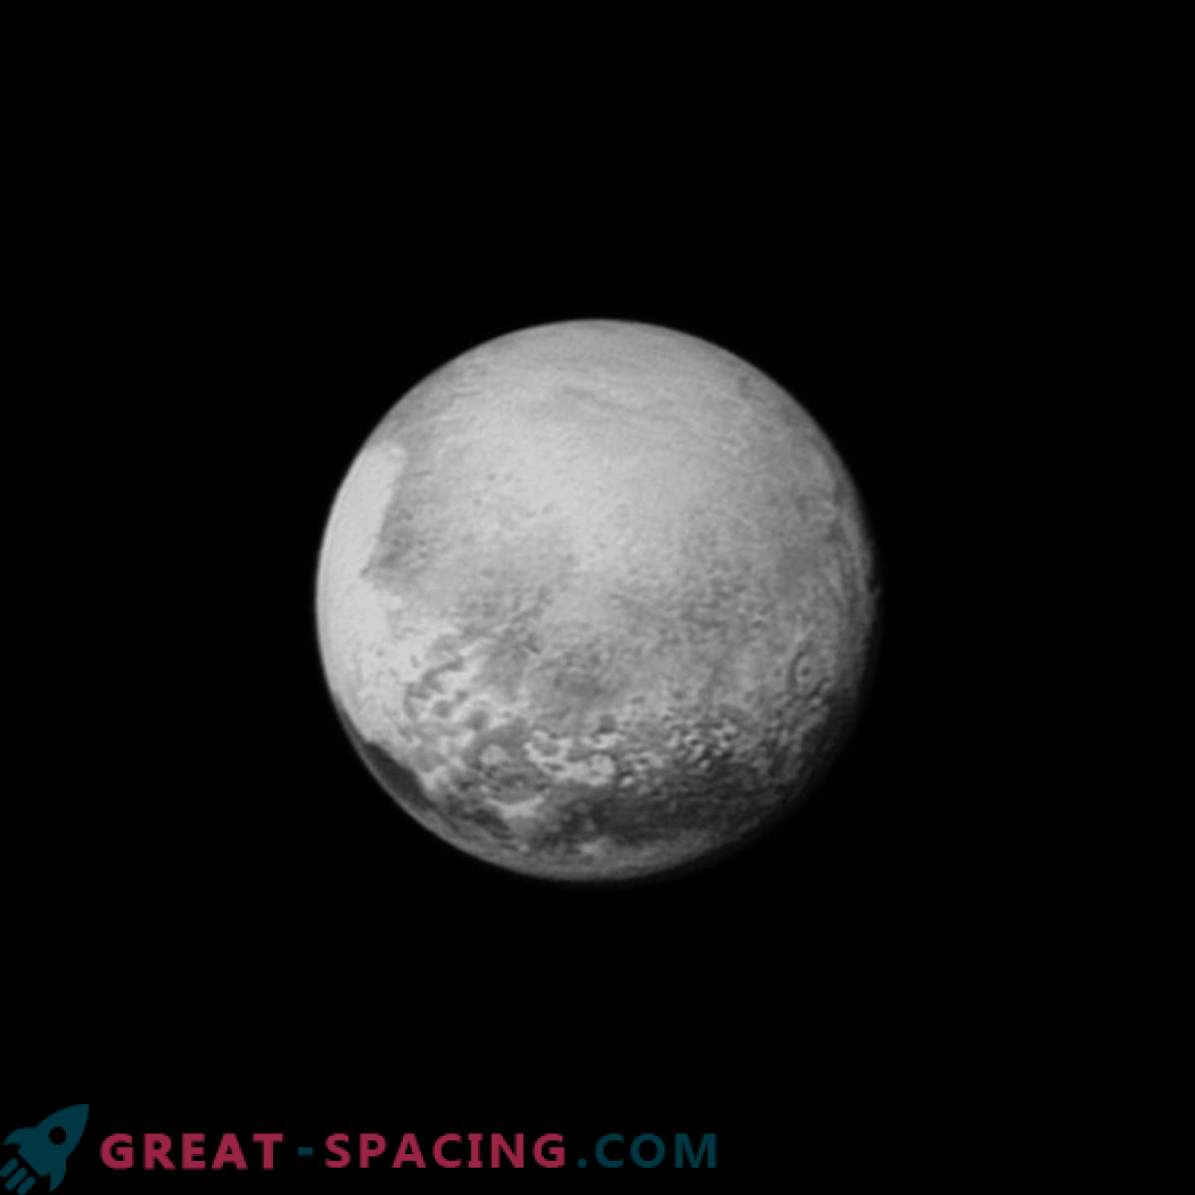 La nave espacial New Horizon de la NASA logró responder una de las preguntas principales: ¿qué tan grande es Plutón?